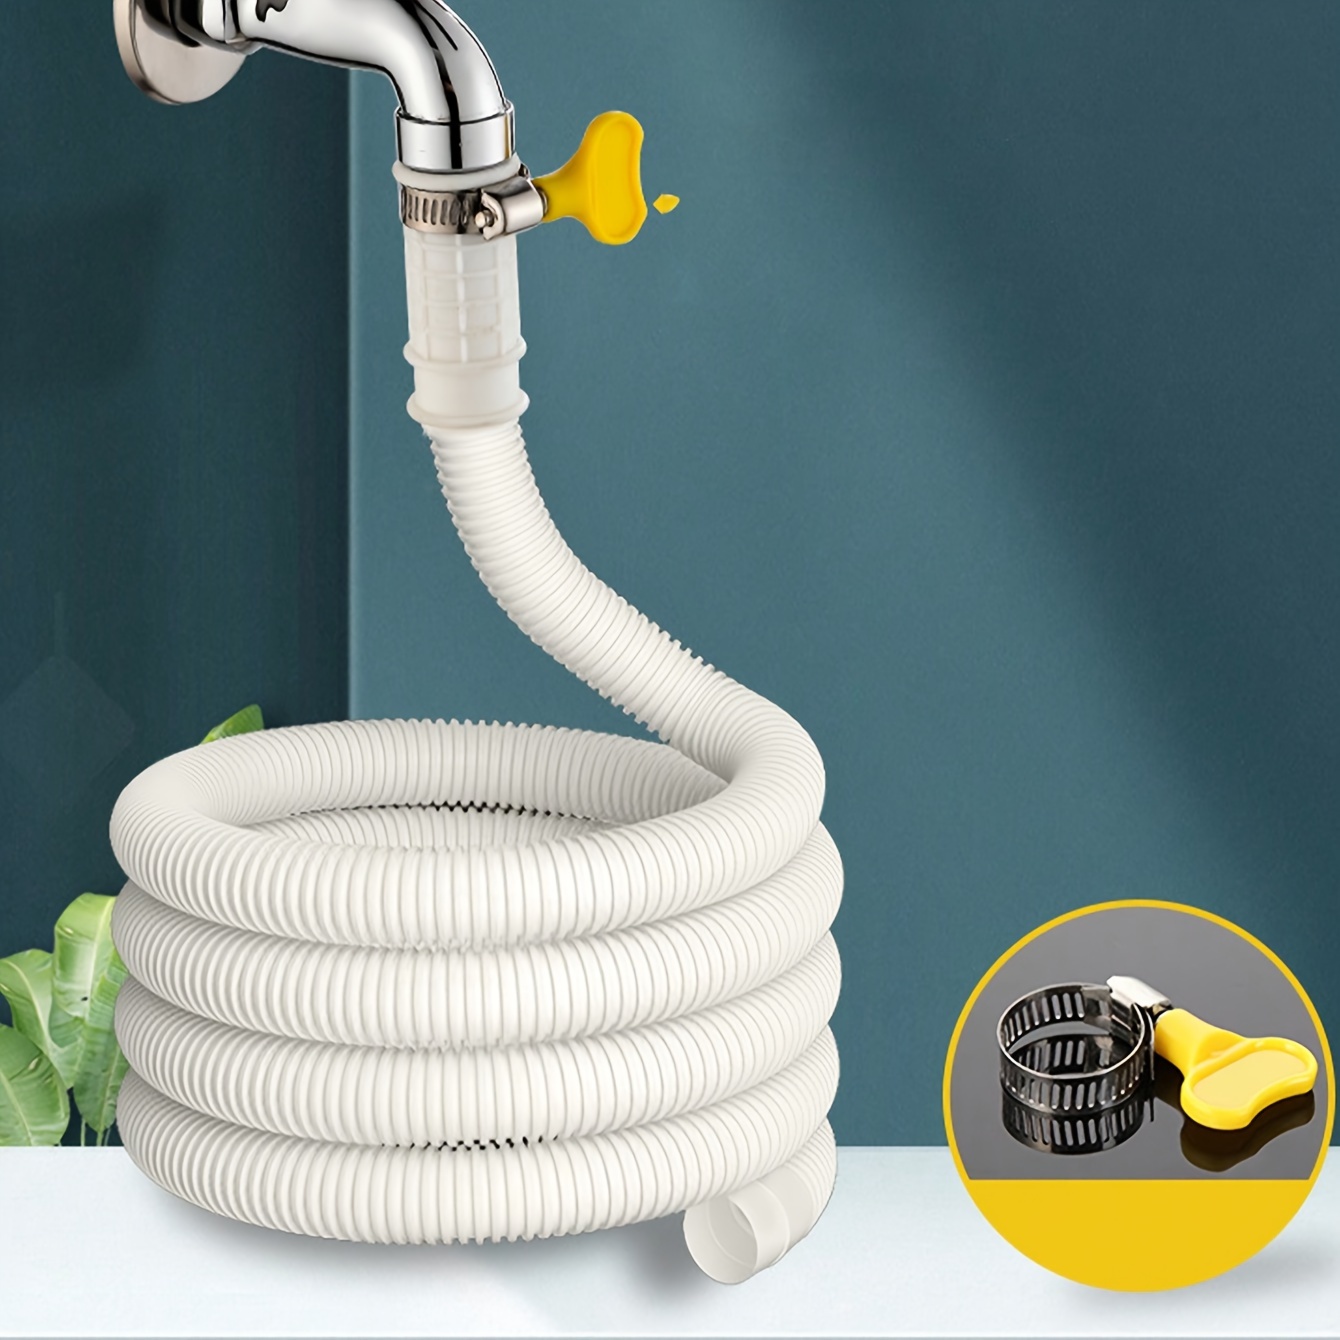 Extension de robinet flexible 360 pour salle de bain, cuisine, extérieur  noir 20cm